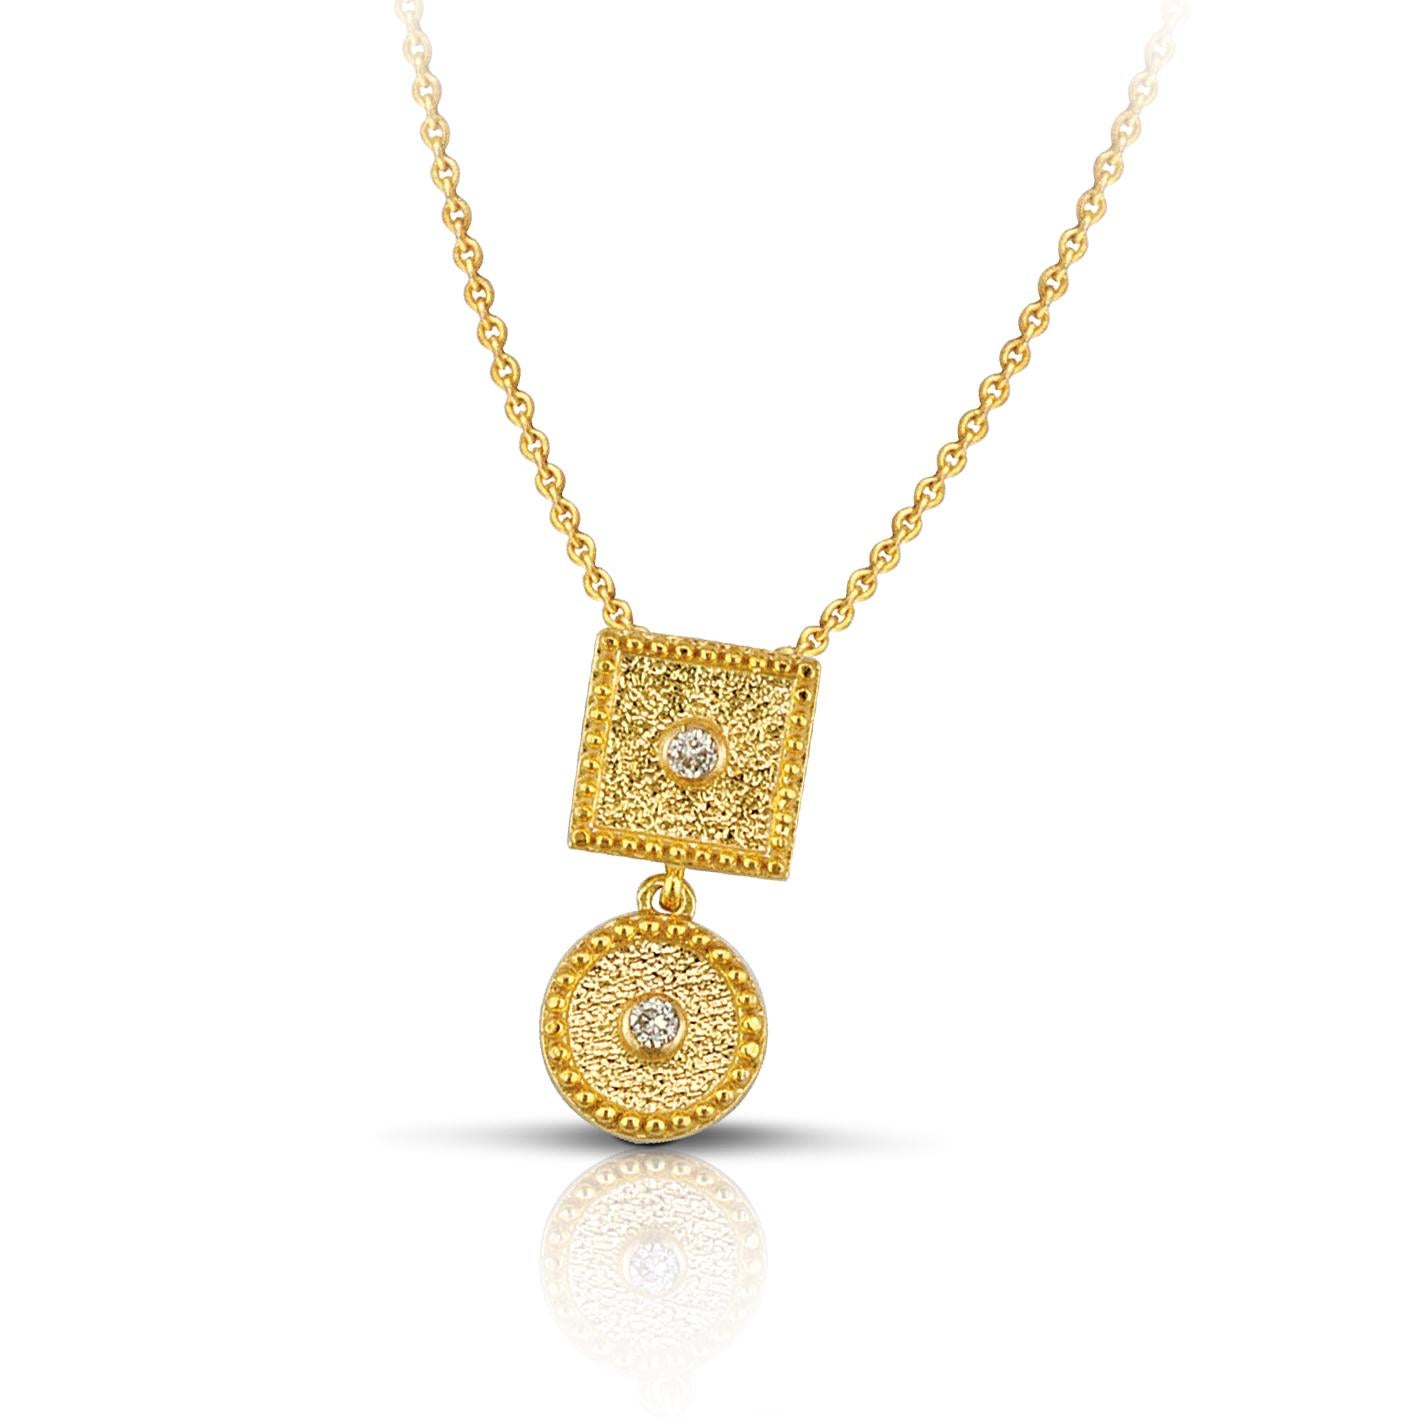 Le pendentif goutte de S.Georgios Design est fabriqué à la main à partir d'or jaune 18 carats massif et est décoré au microscope avec un travail de granulation tout autour. Le fond du pendentif a un aspect velours unique et comporte 2 diamants